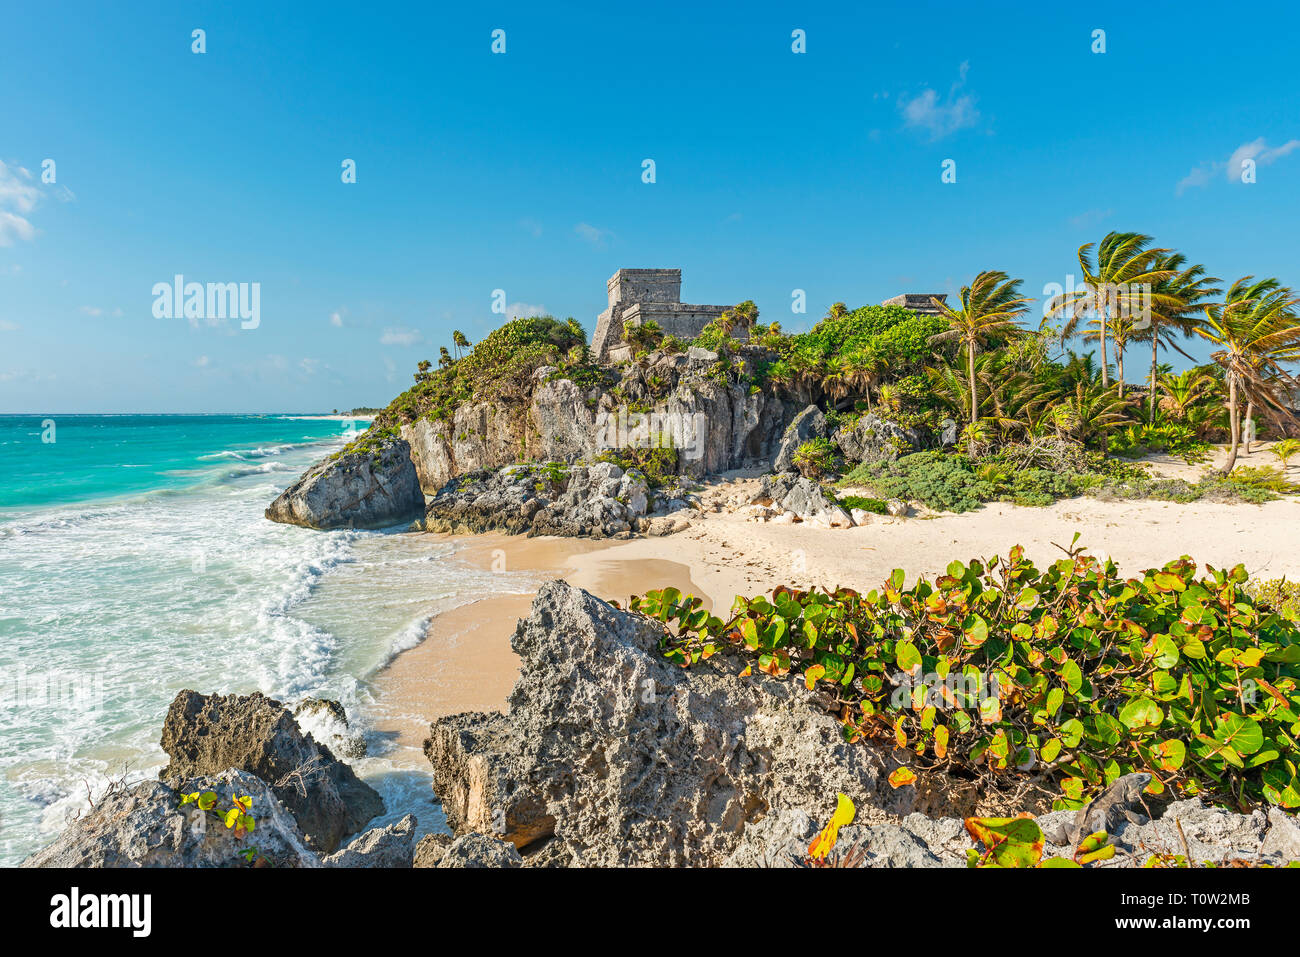 Las ruinas mayas de Tulum con su playa idílica por el Mar Caribe, el estado de Quintana Roo, Península de Yucatán, México. Foto de stock